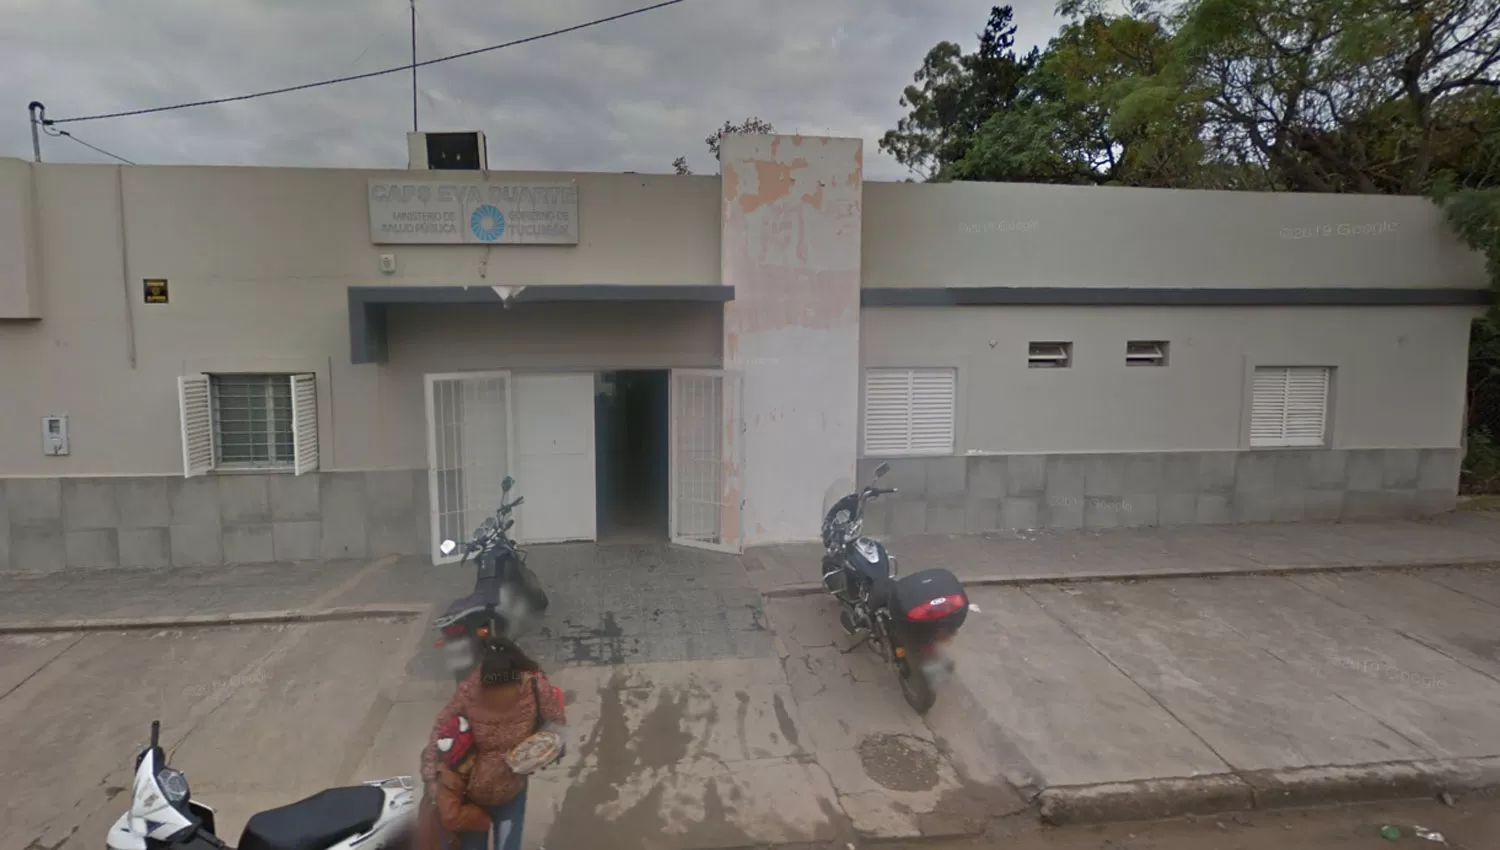 EN ZONA NORTE. El Centro de Atención Primaria Eva Perón está ubicado a pocos metros de la Subjefatura de Policía.